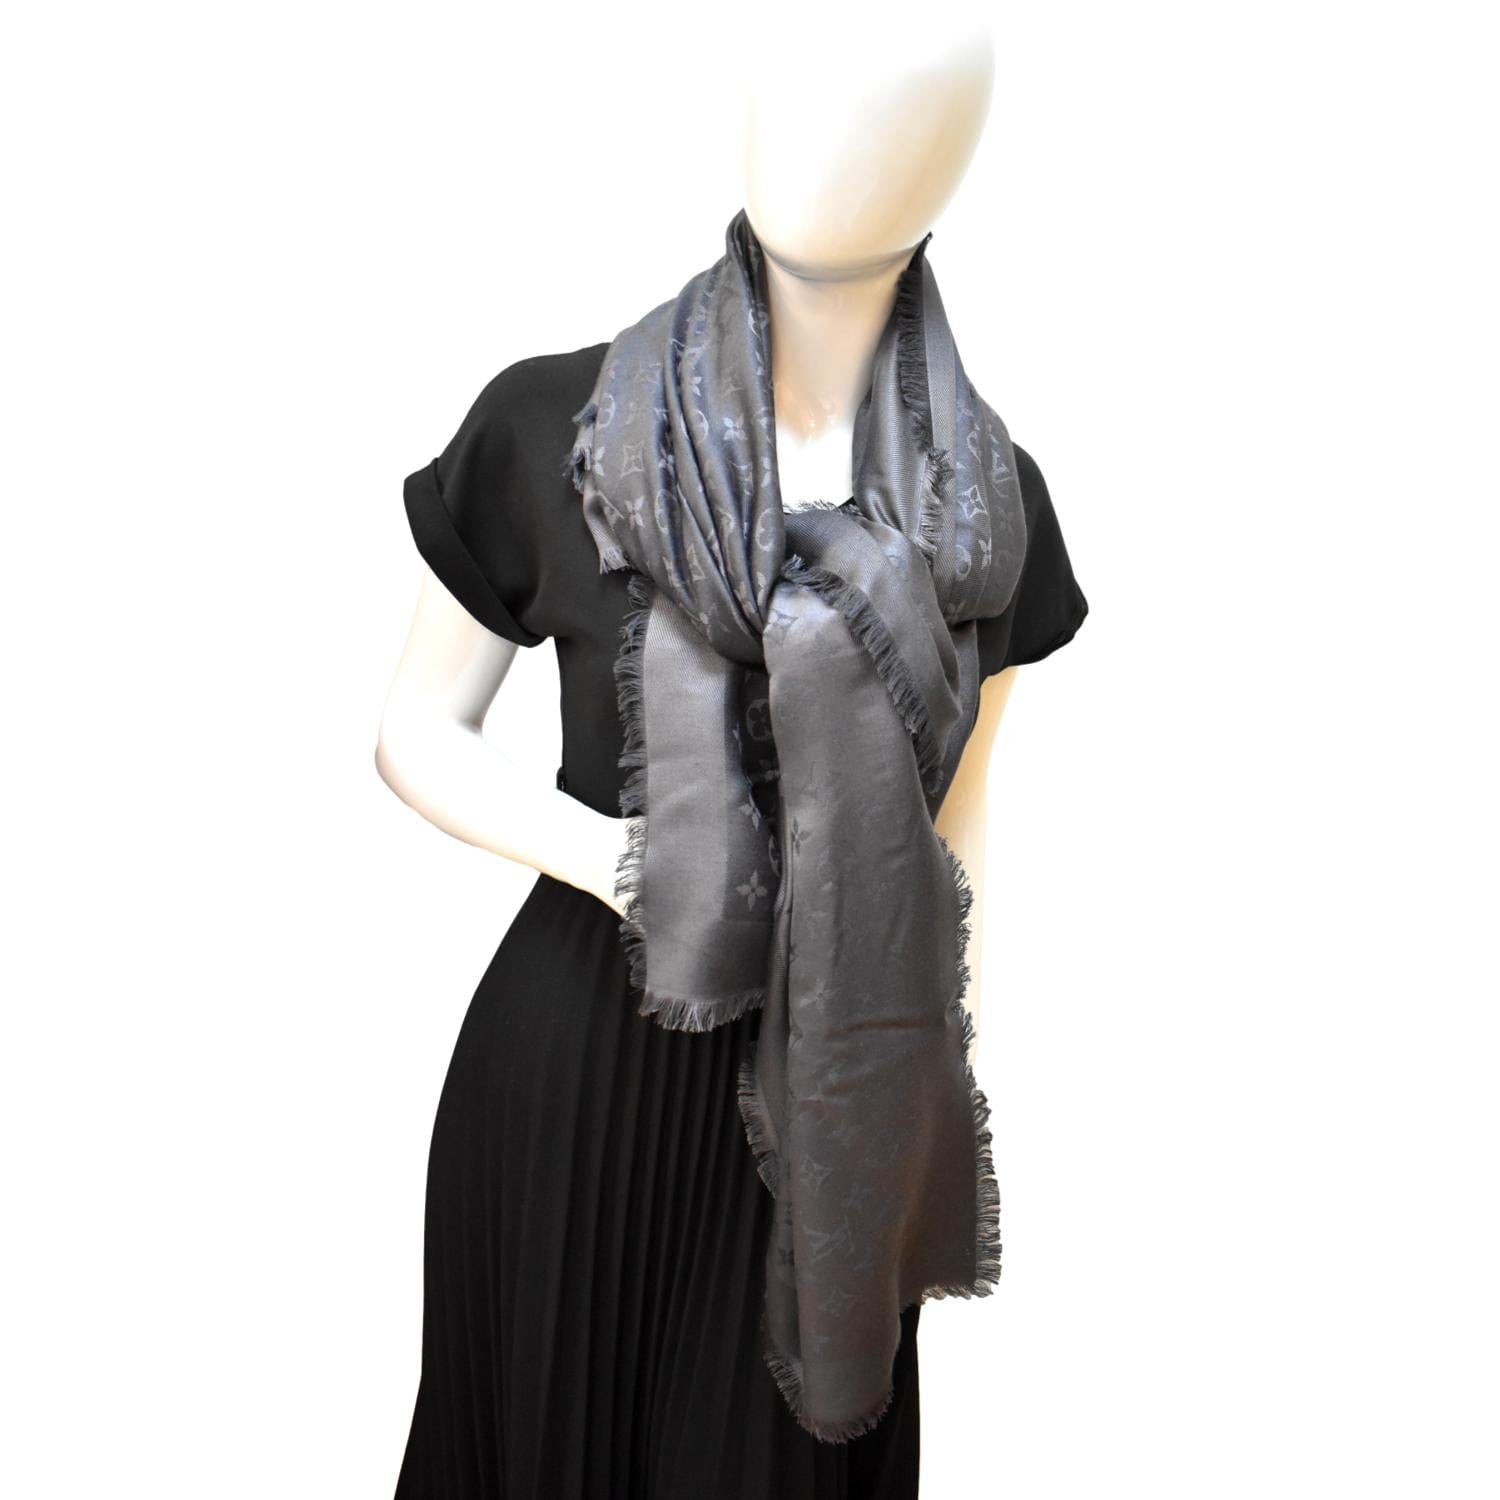 LV silk scarf - Grey silk scarf